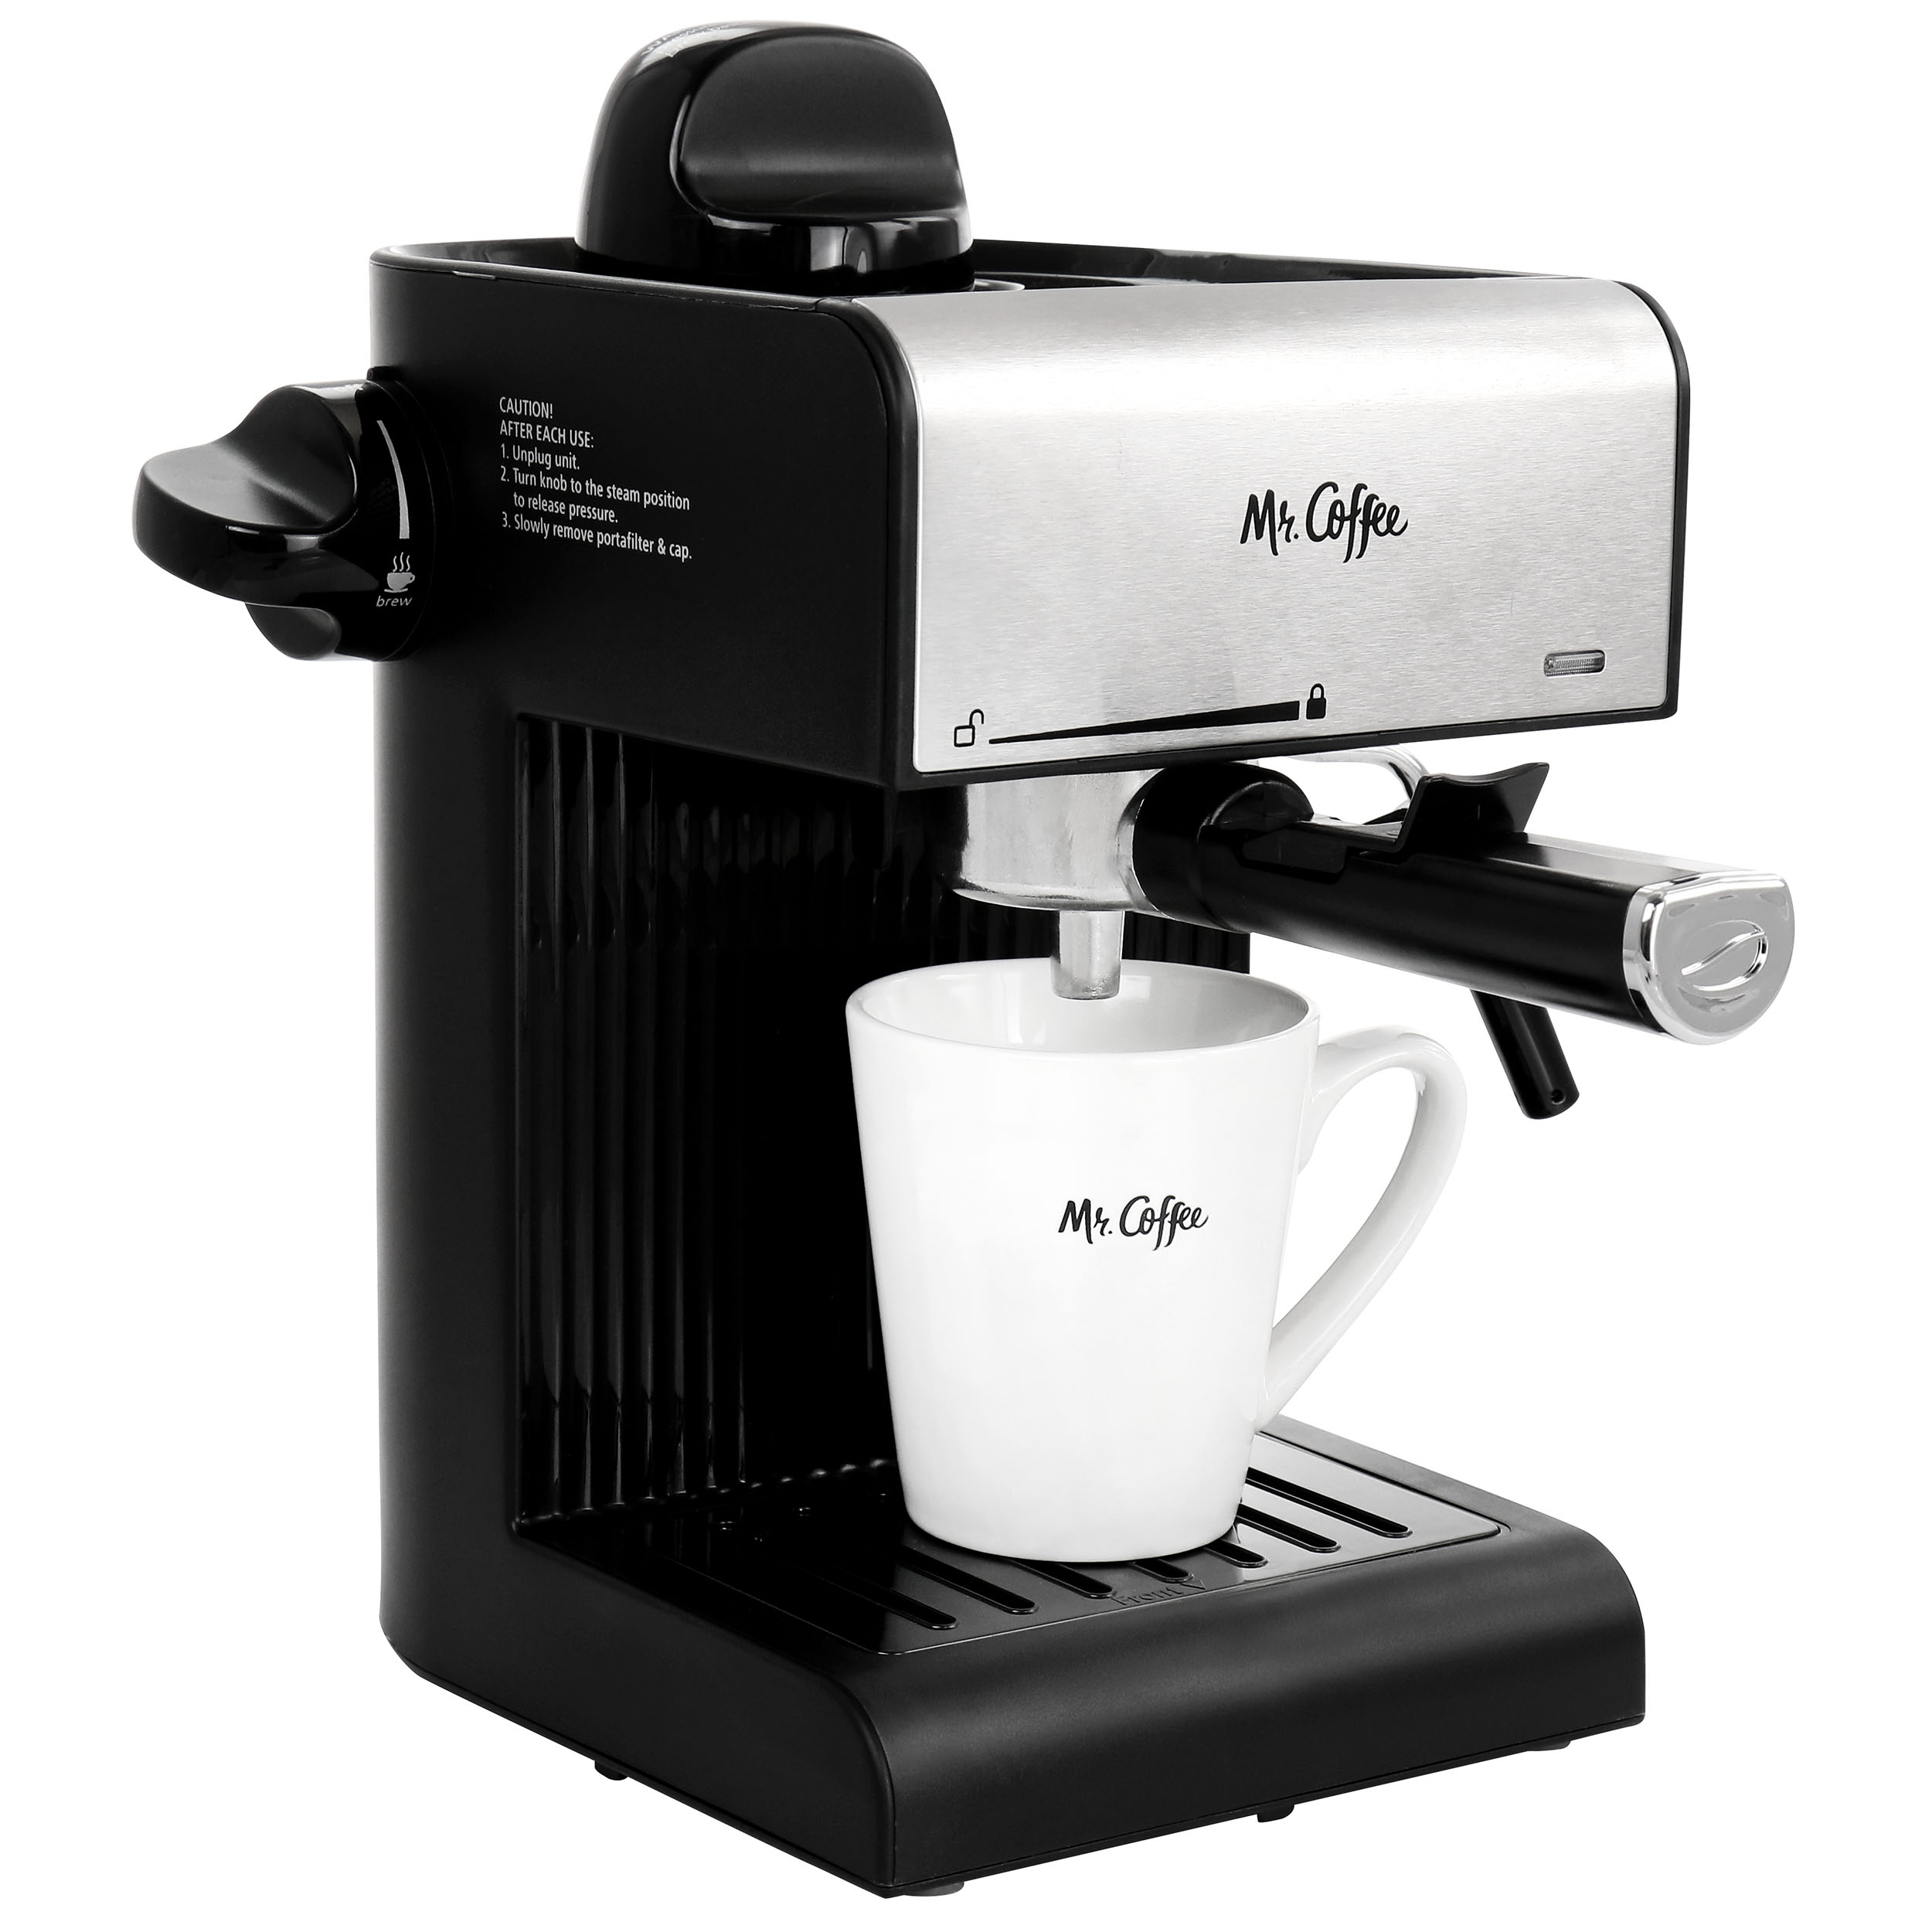 Mr. Coffee Steam Espresso and Cappuccino Maker - Black